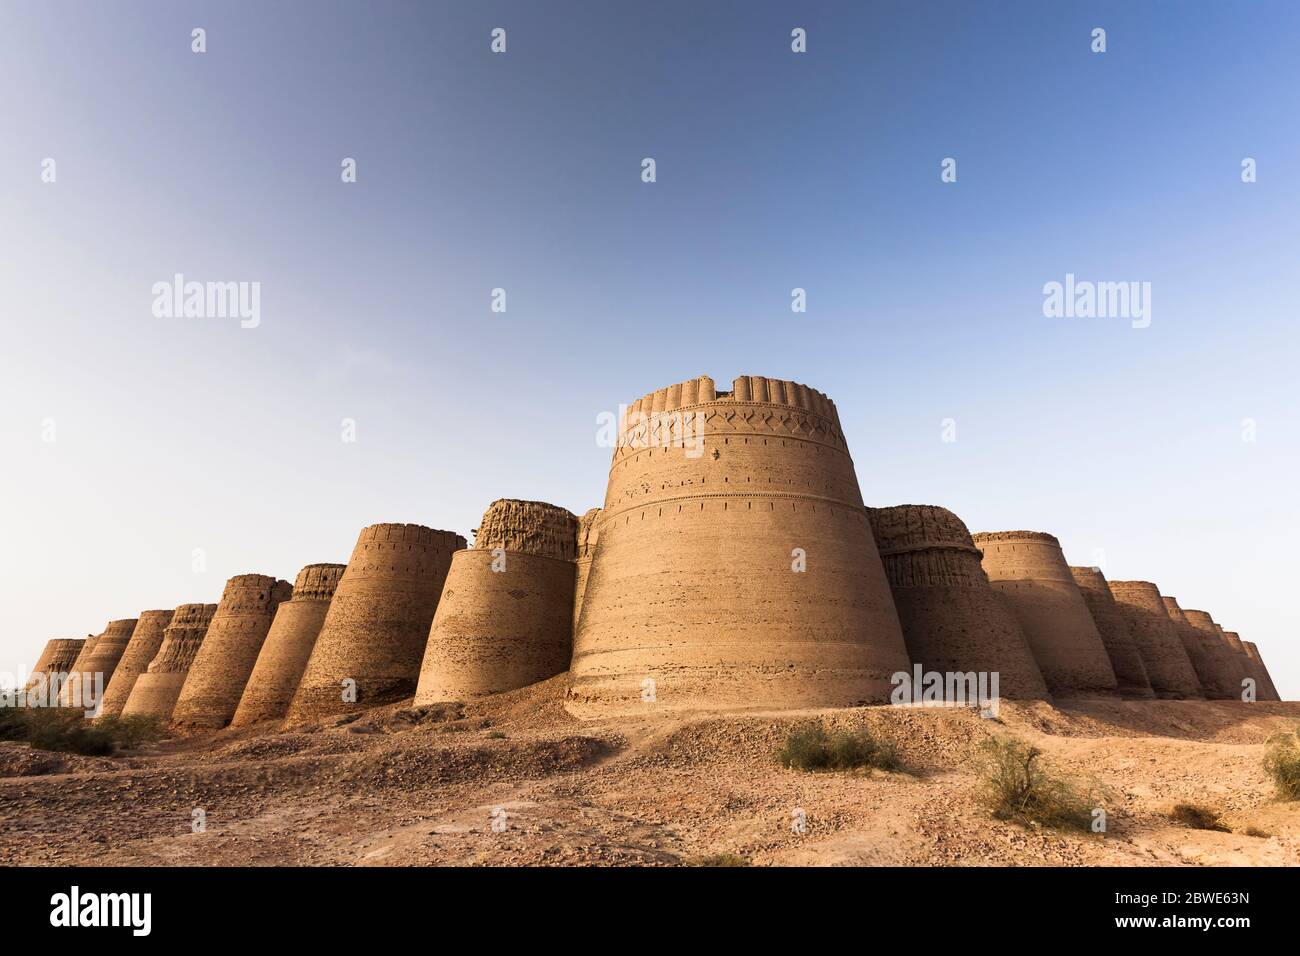 Derawar Fort, Derawar, Bahawalpur district, Punjab Province, Pakistan, South Asia, Asia Stock Photo